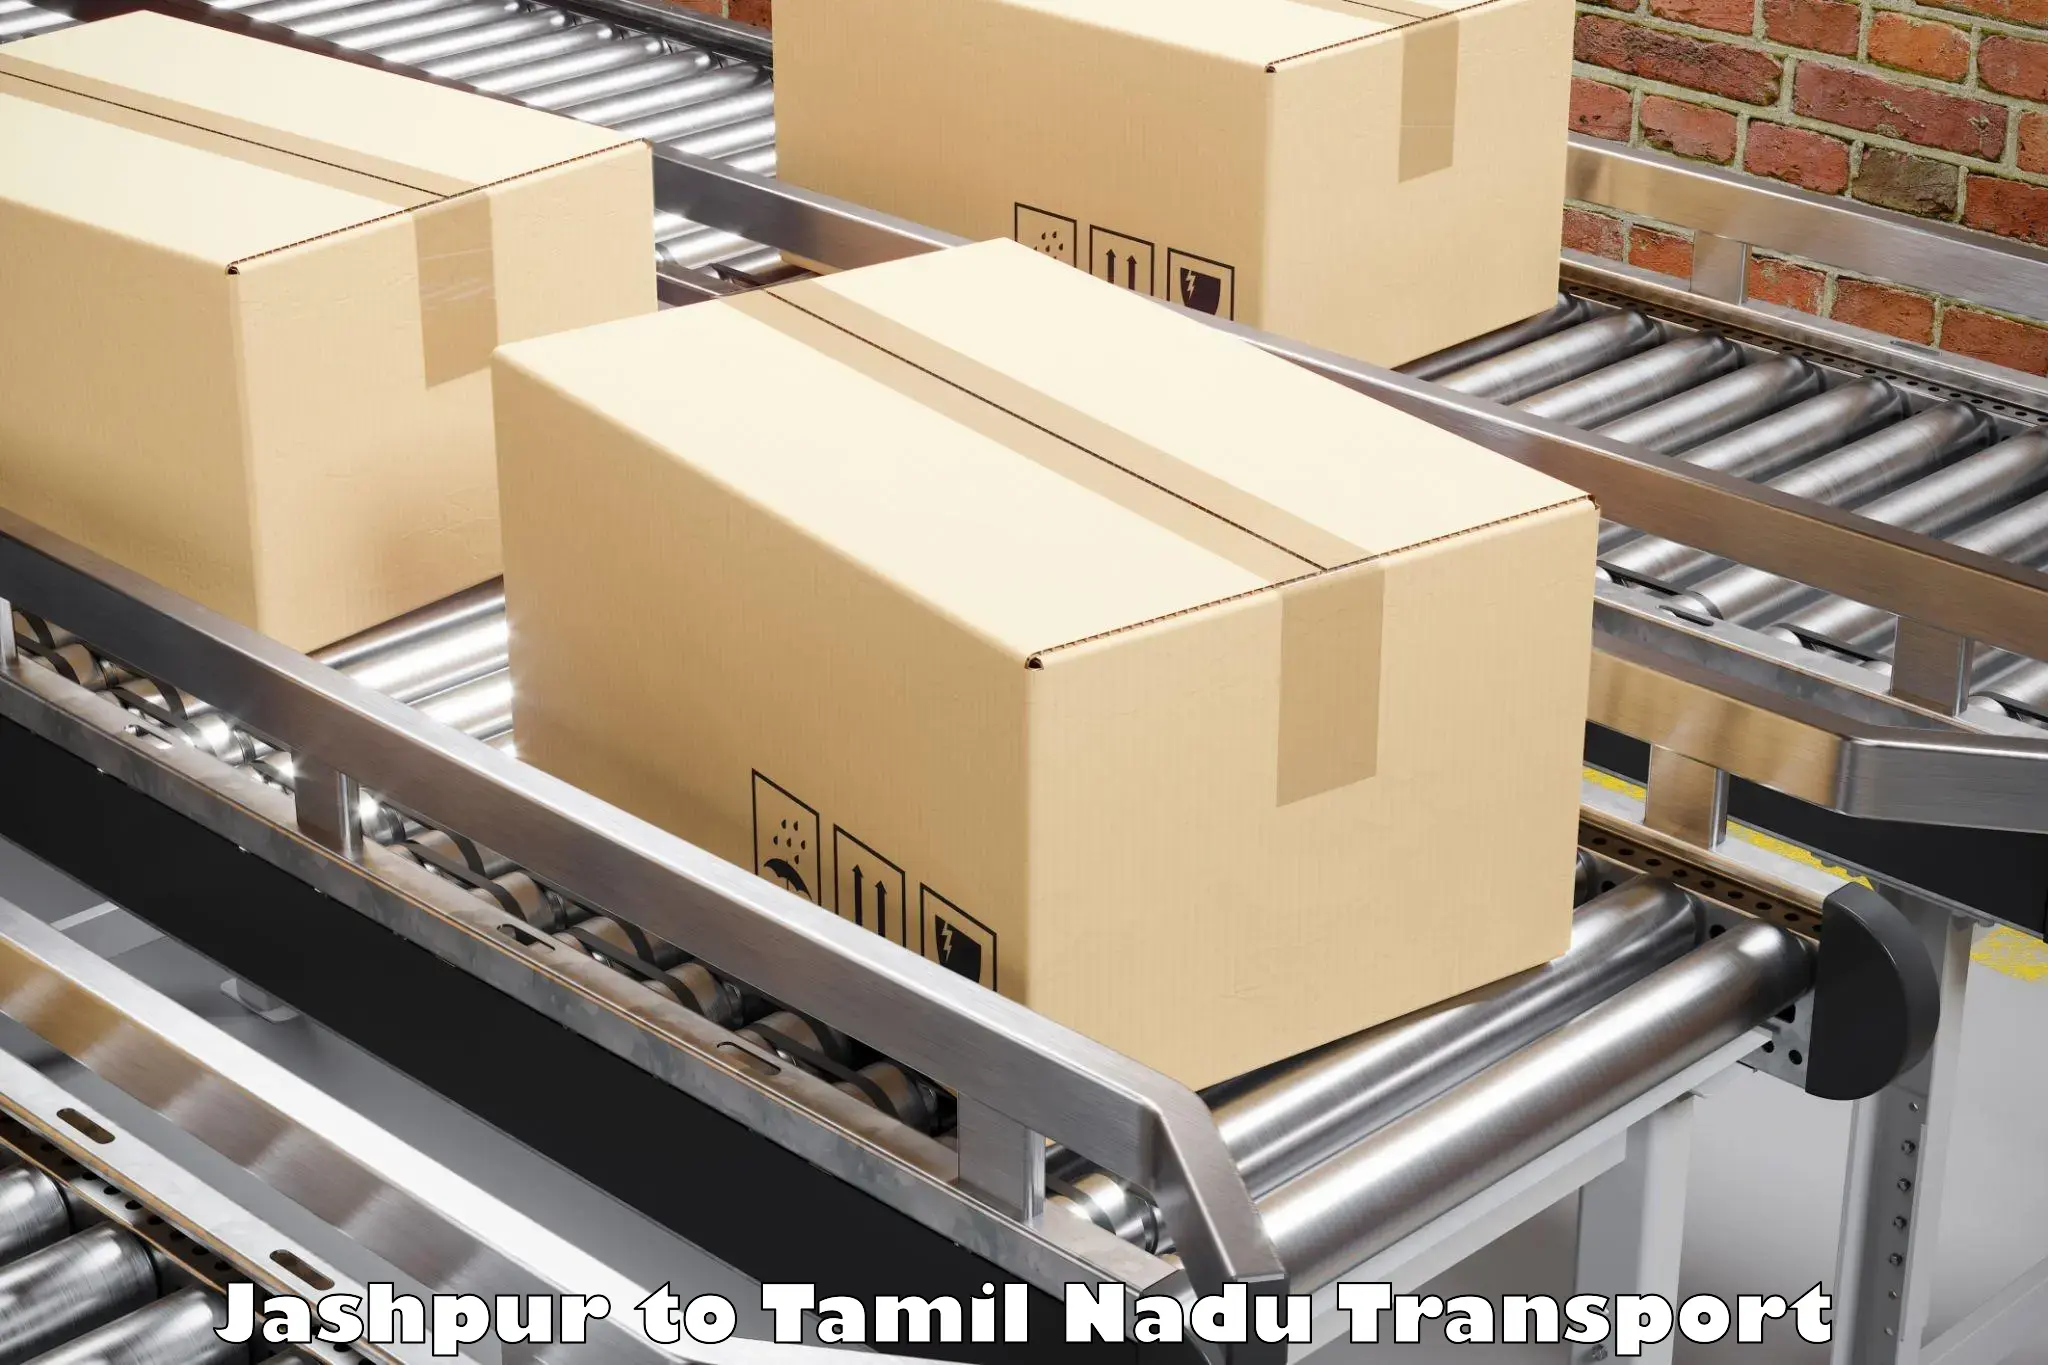 Lorry transport service Jashpur to Chennai